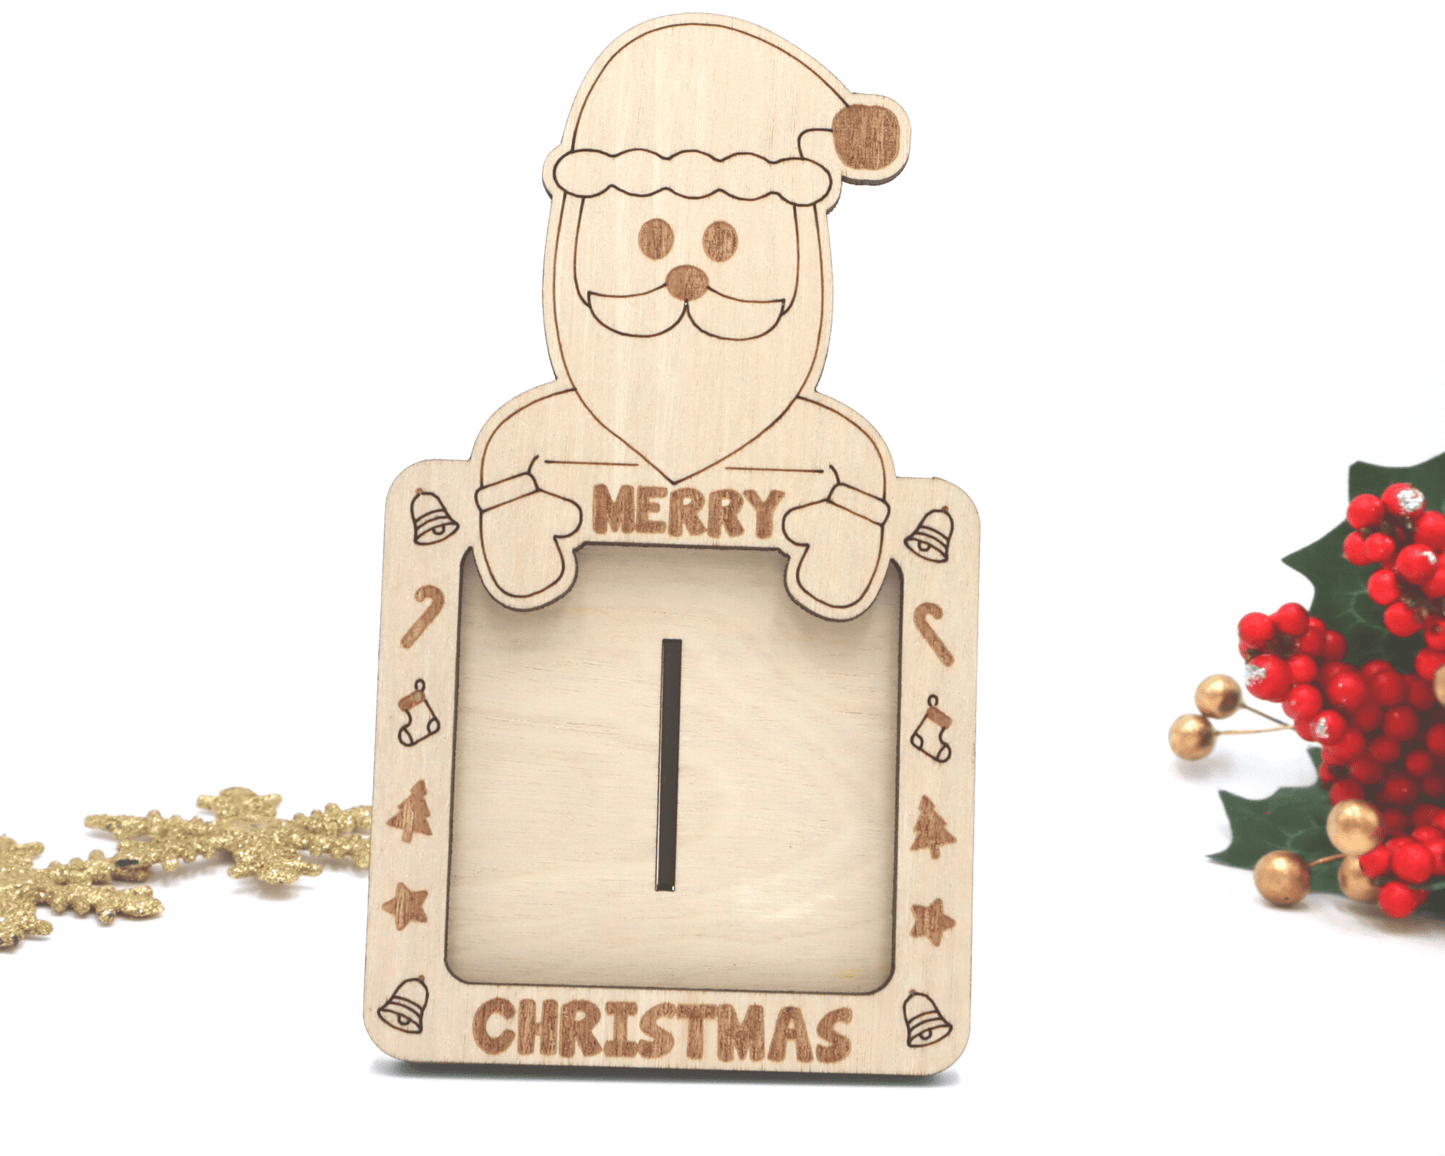 Christmas Theme Self-Standing Photo Frame Set - Elf and Santa